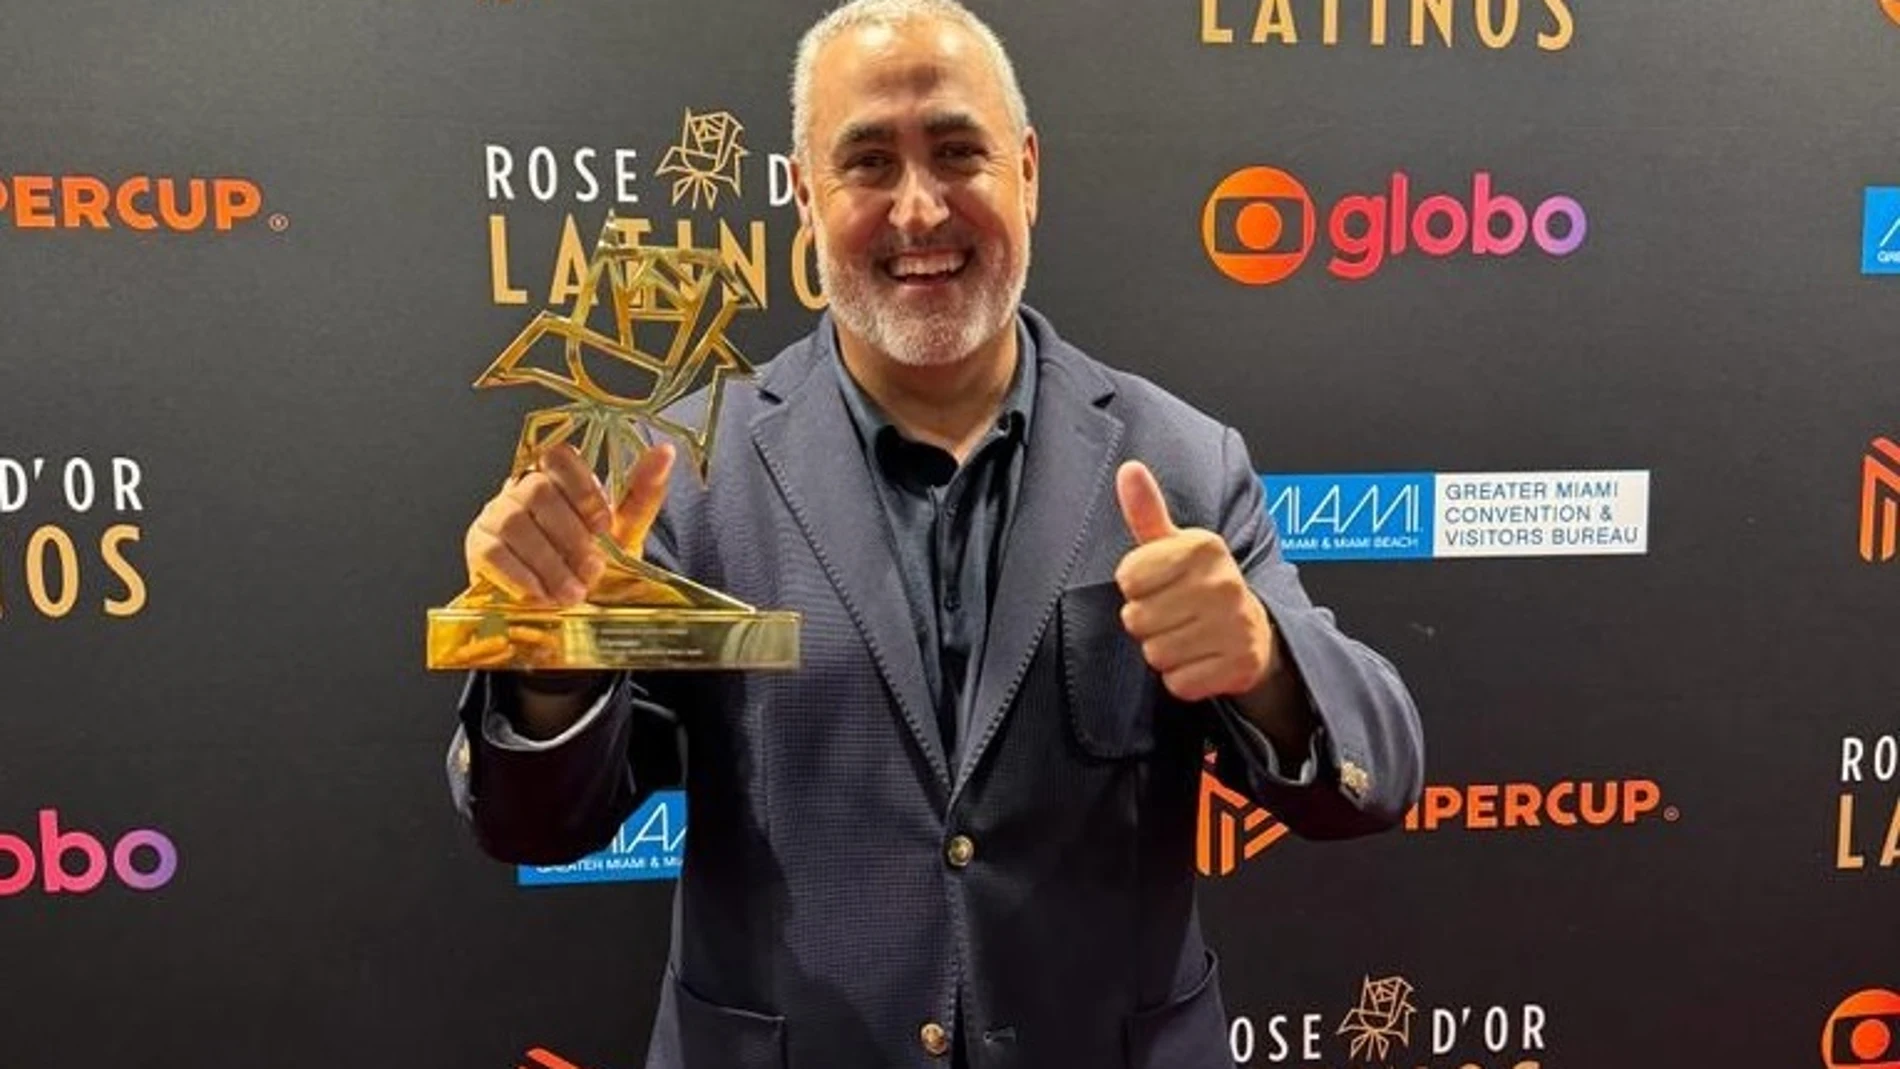 'El Hormiguero' gana Rose d’Or Latinos a mejor programa de entretenimiento